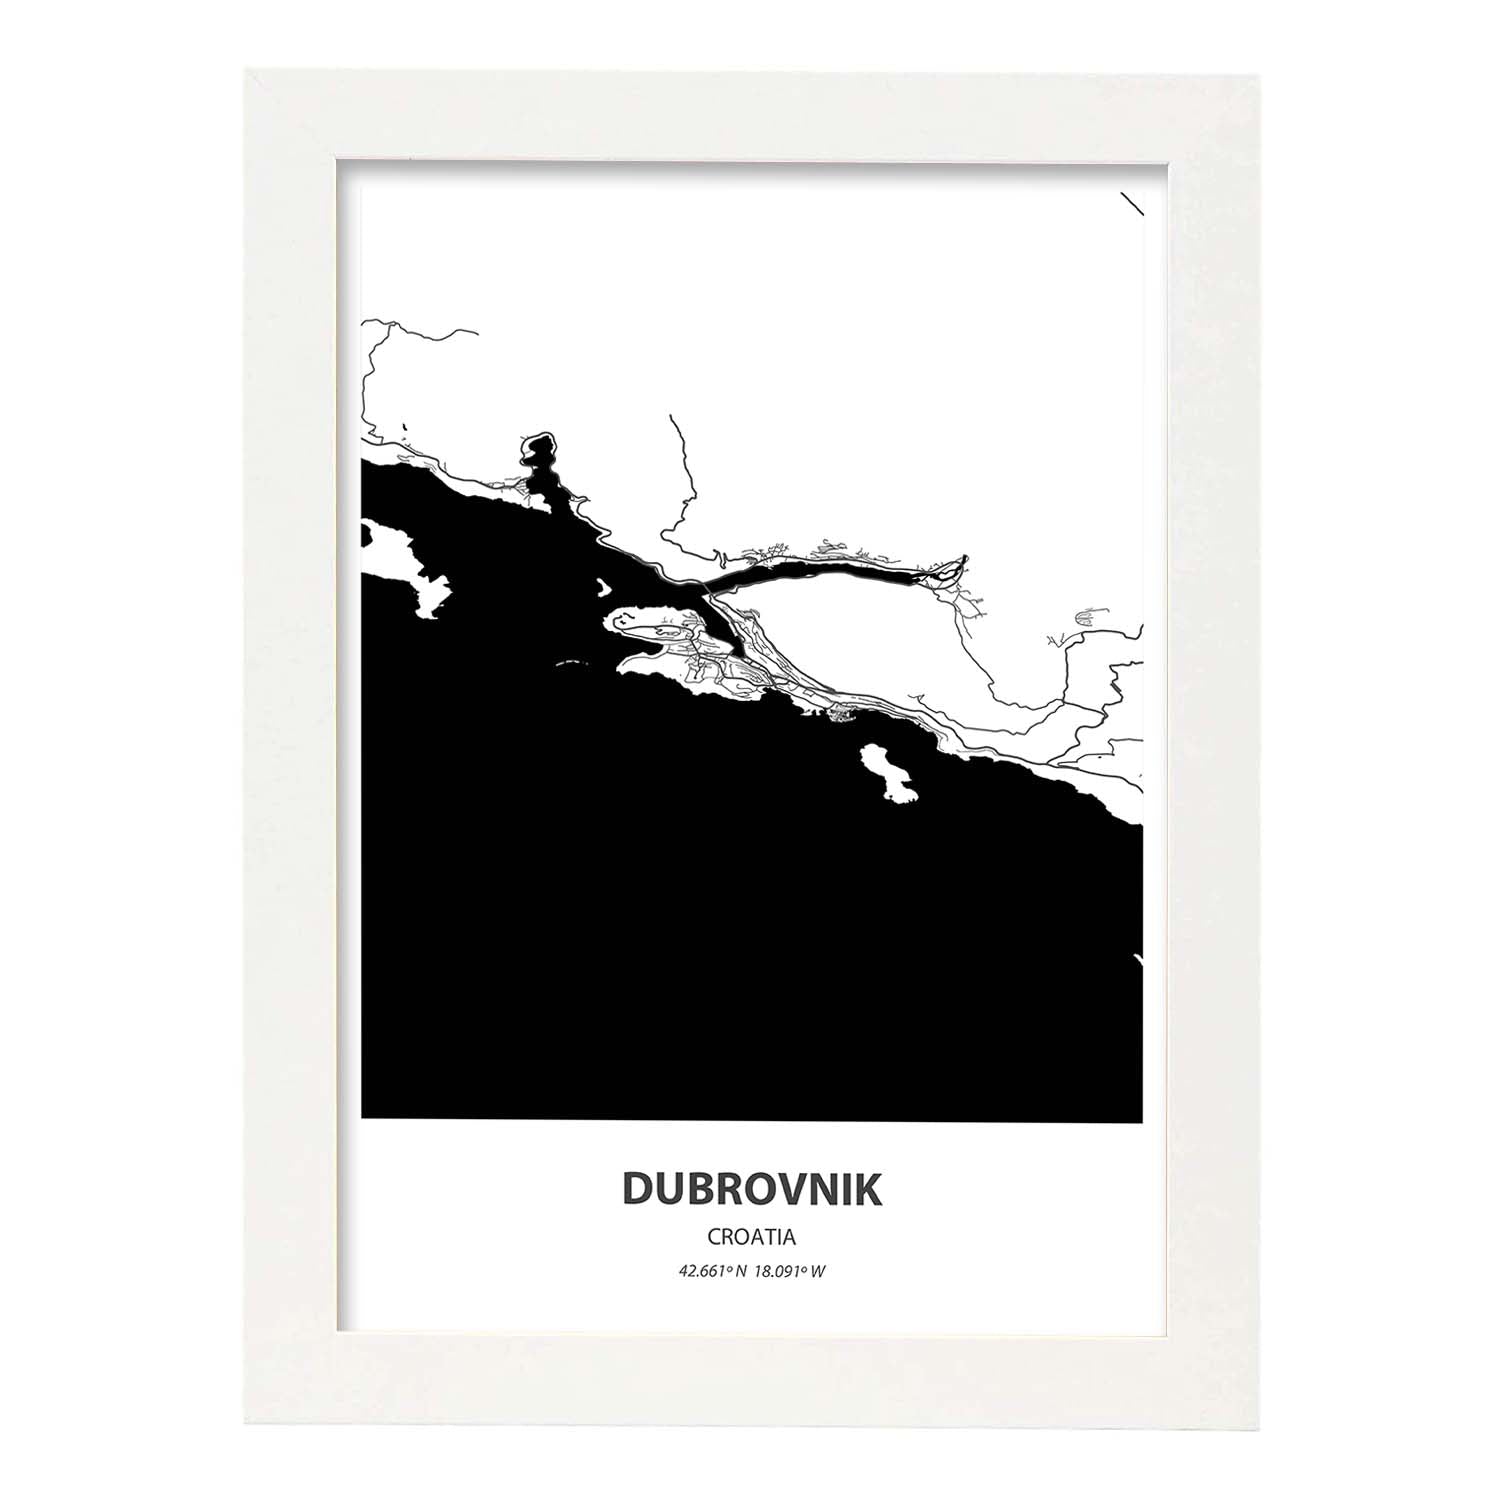 Poster con mapa de Dubrokniv - Croacia. Láminas de ciudades de Europa con mares y ríos en color negro.-Artwork-Nacnic-A4-Marco Blanco-Nacnic Estudio SL